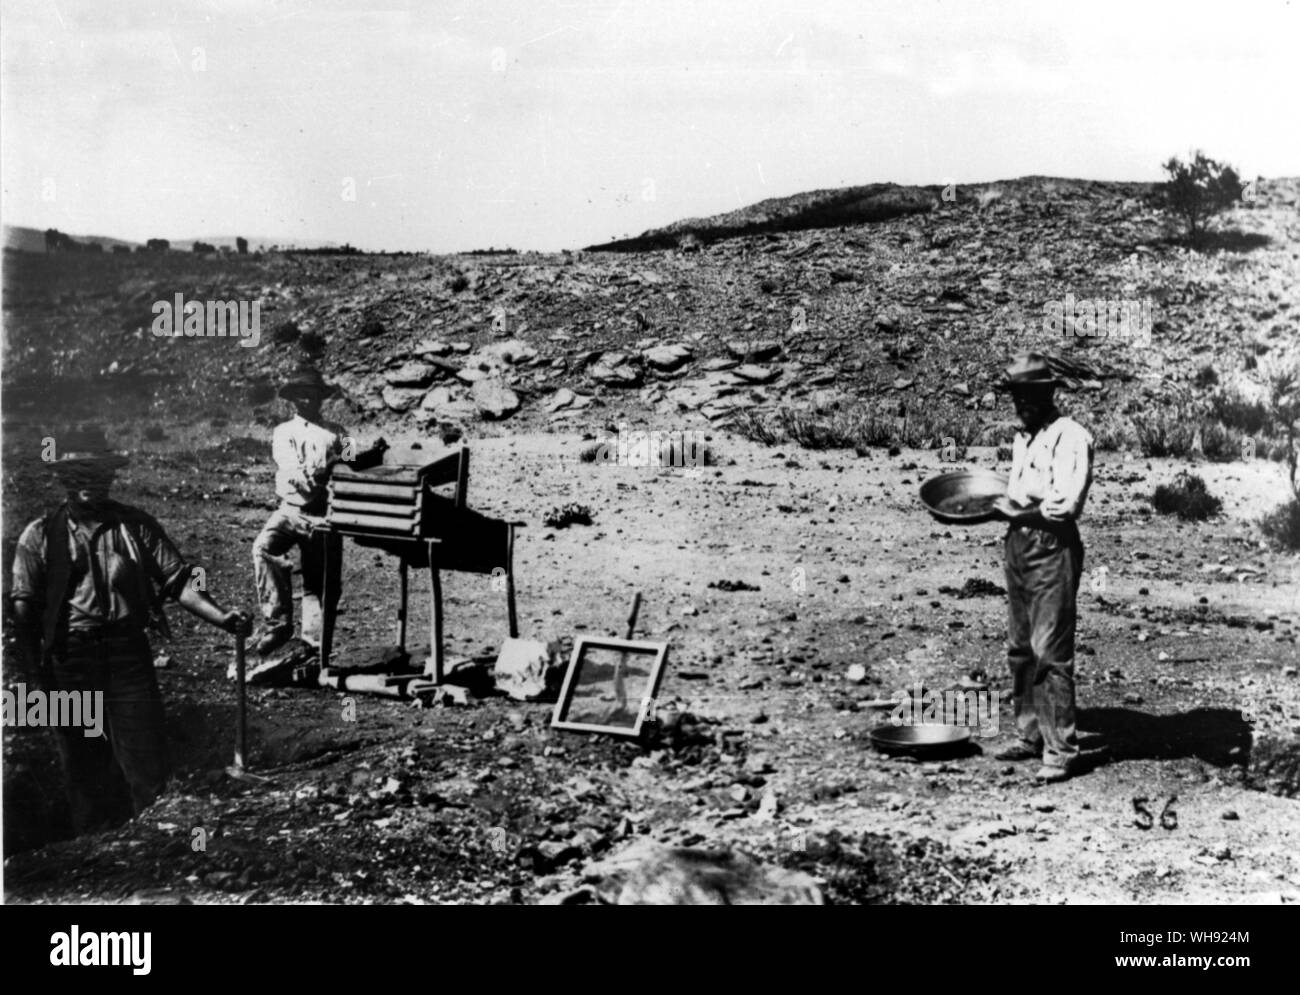 Arltunga, in die MacDonnell Ranges westlich von Alice Springs, war eine goldene Feld im Jahre 1880 entdeckten s Bergleute graben Cradle und Schleuse der Kies nicht Arltunga verlassen Rich Stockfoto